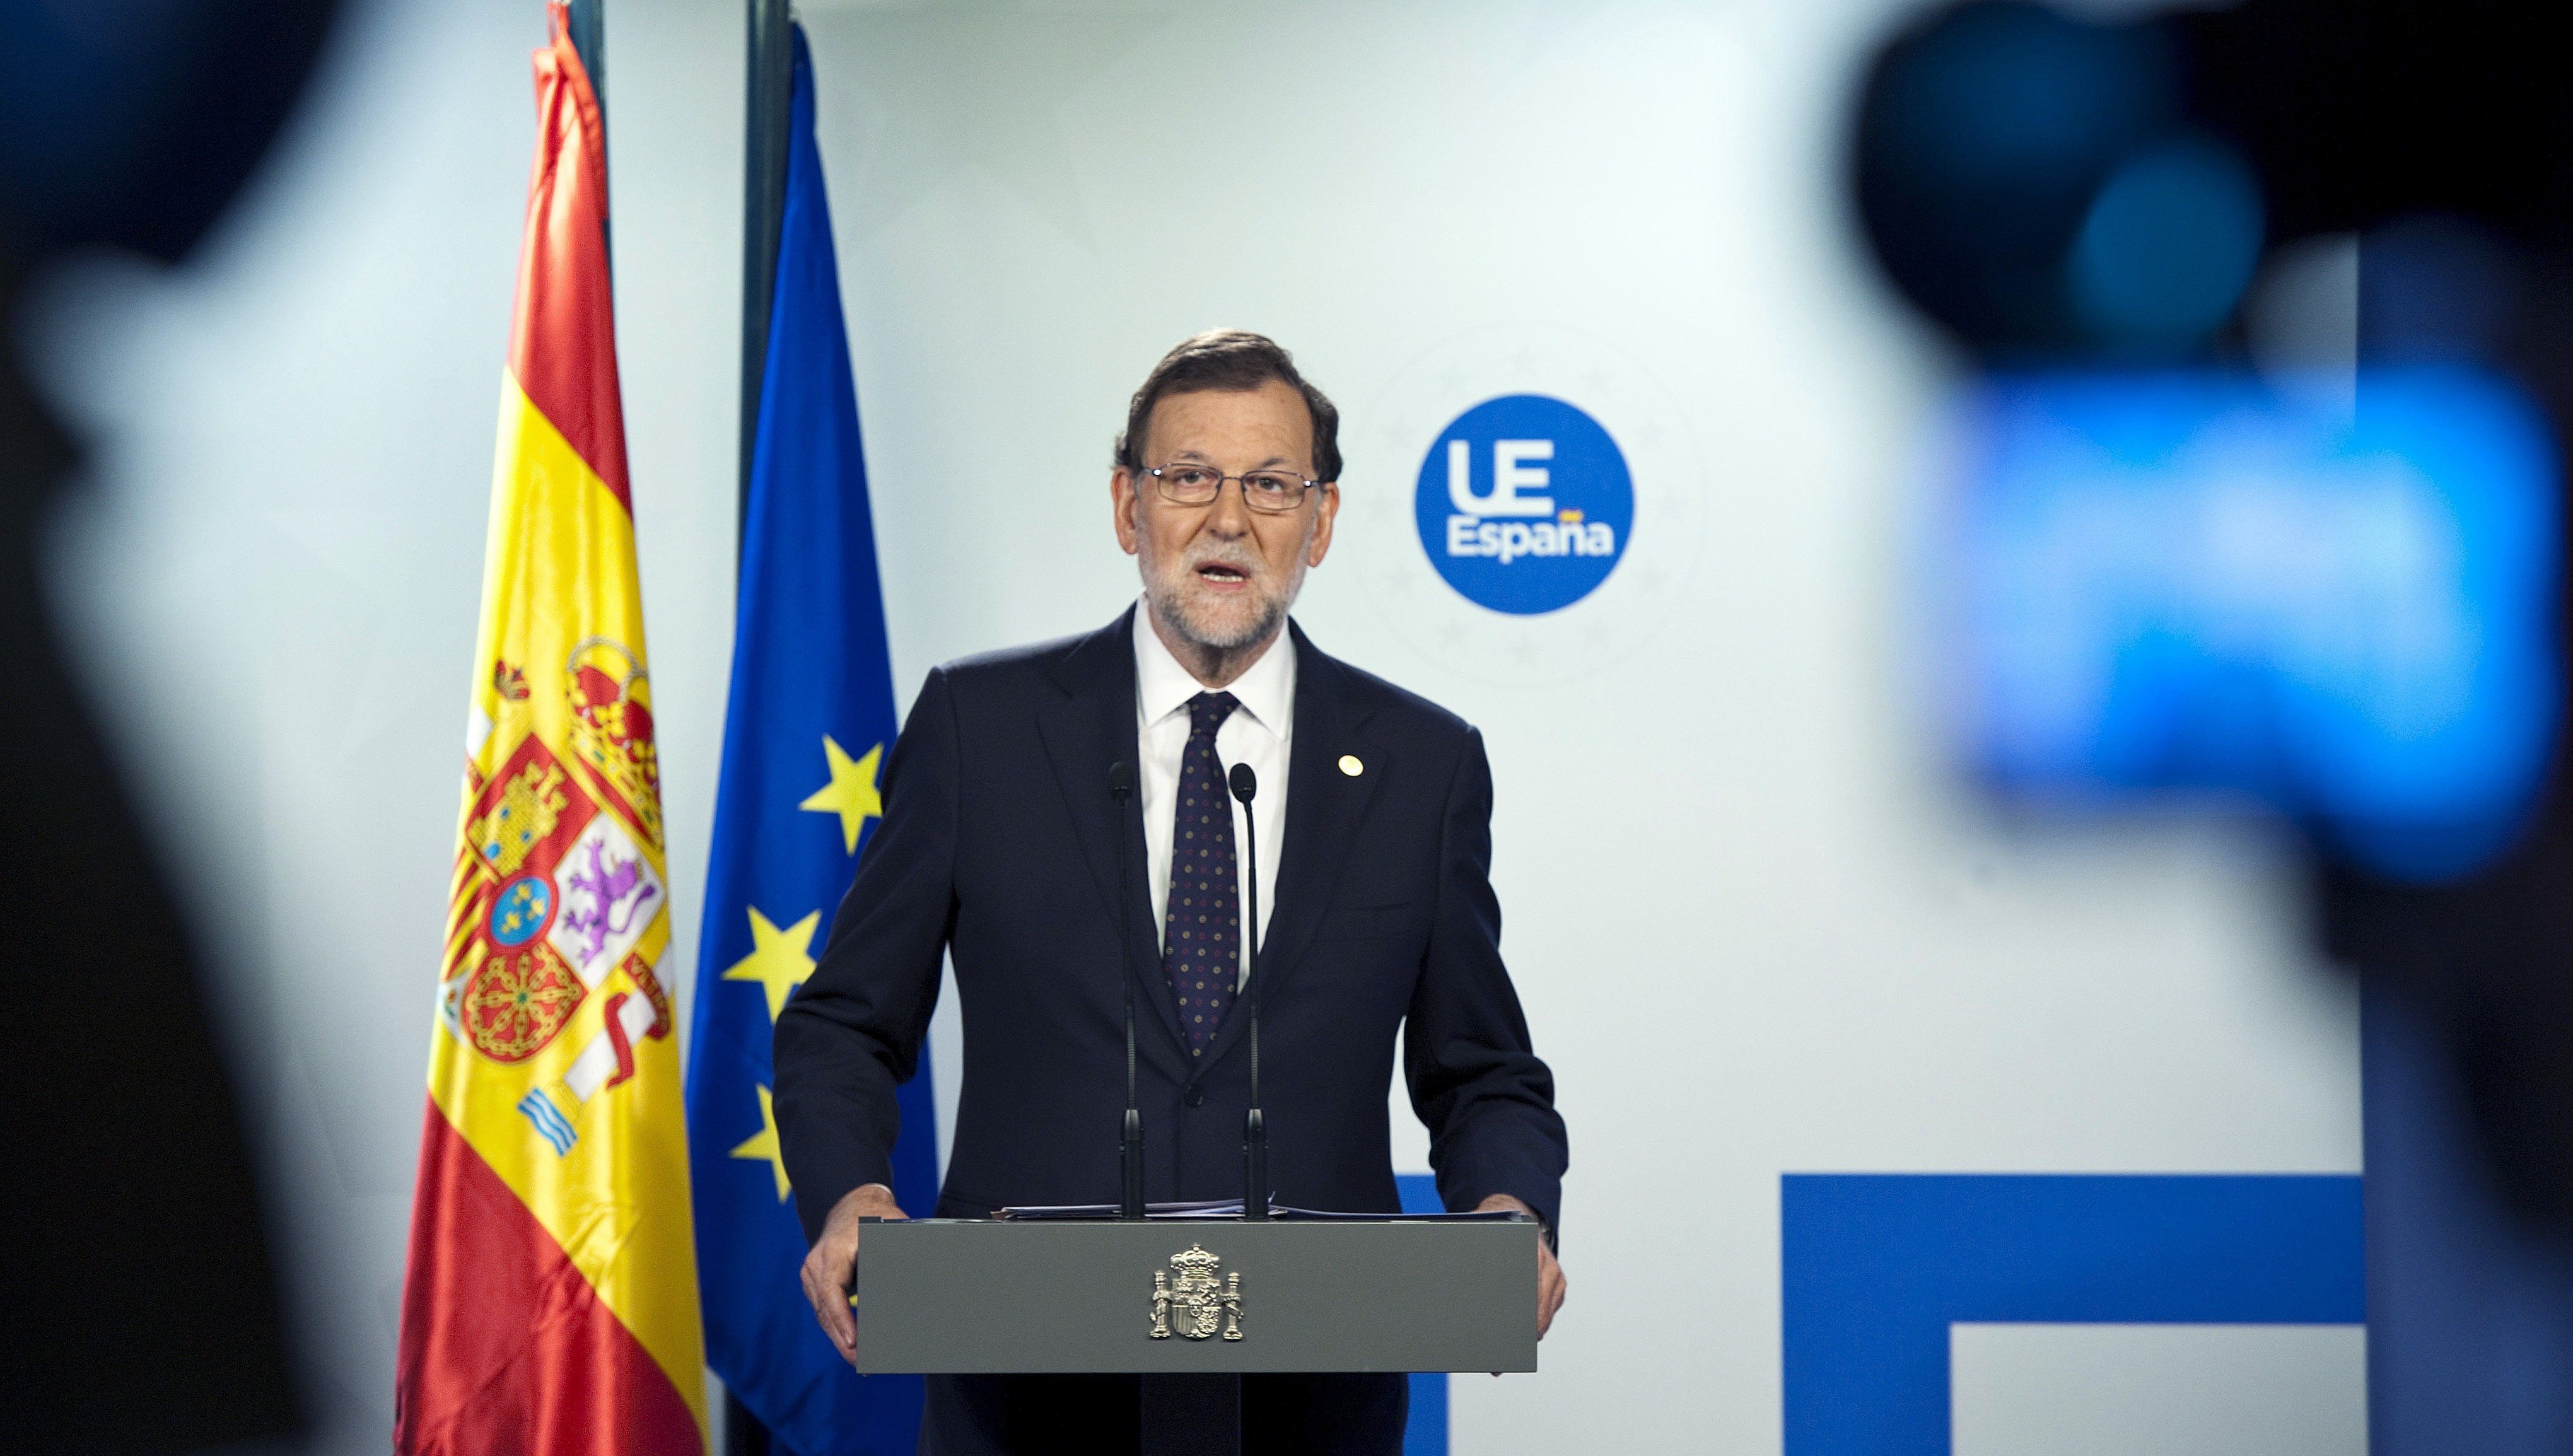 La indecisión del PSOE acerca posiciones entre Rajoy y C's